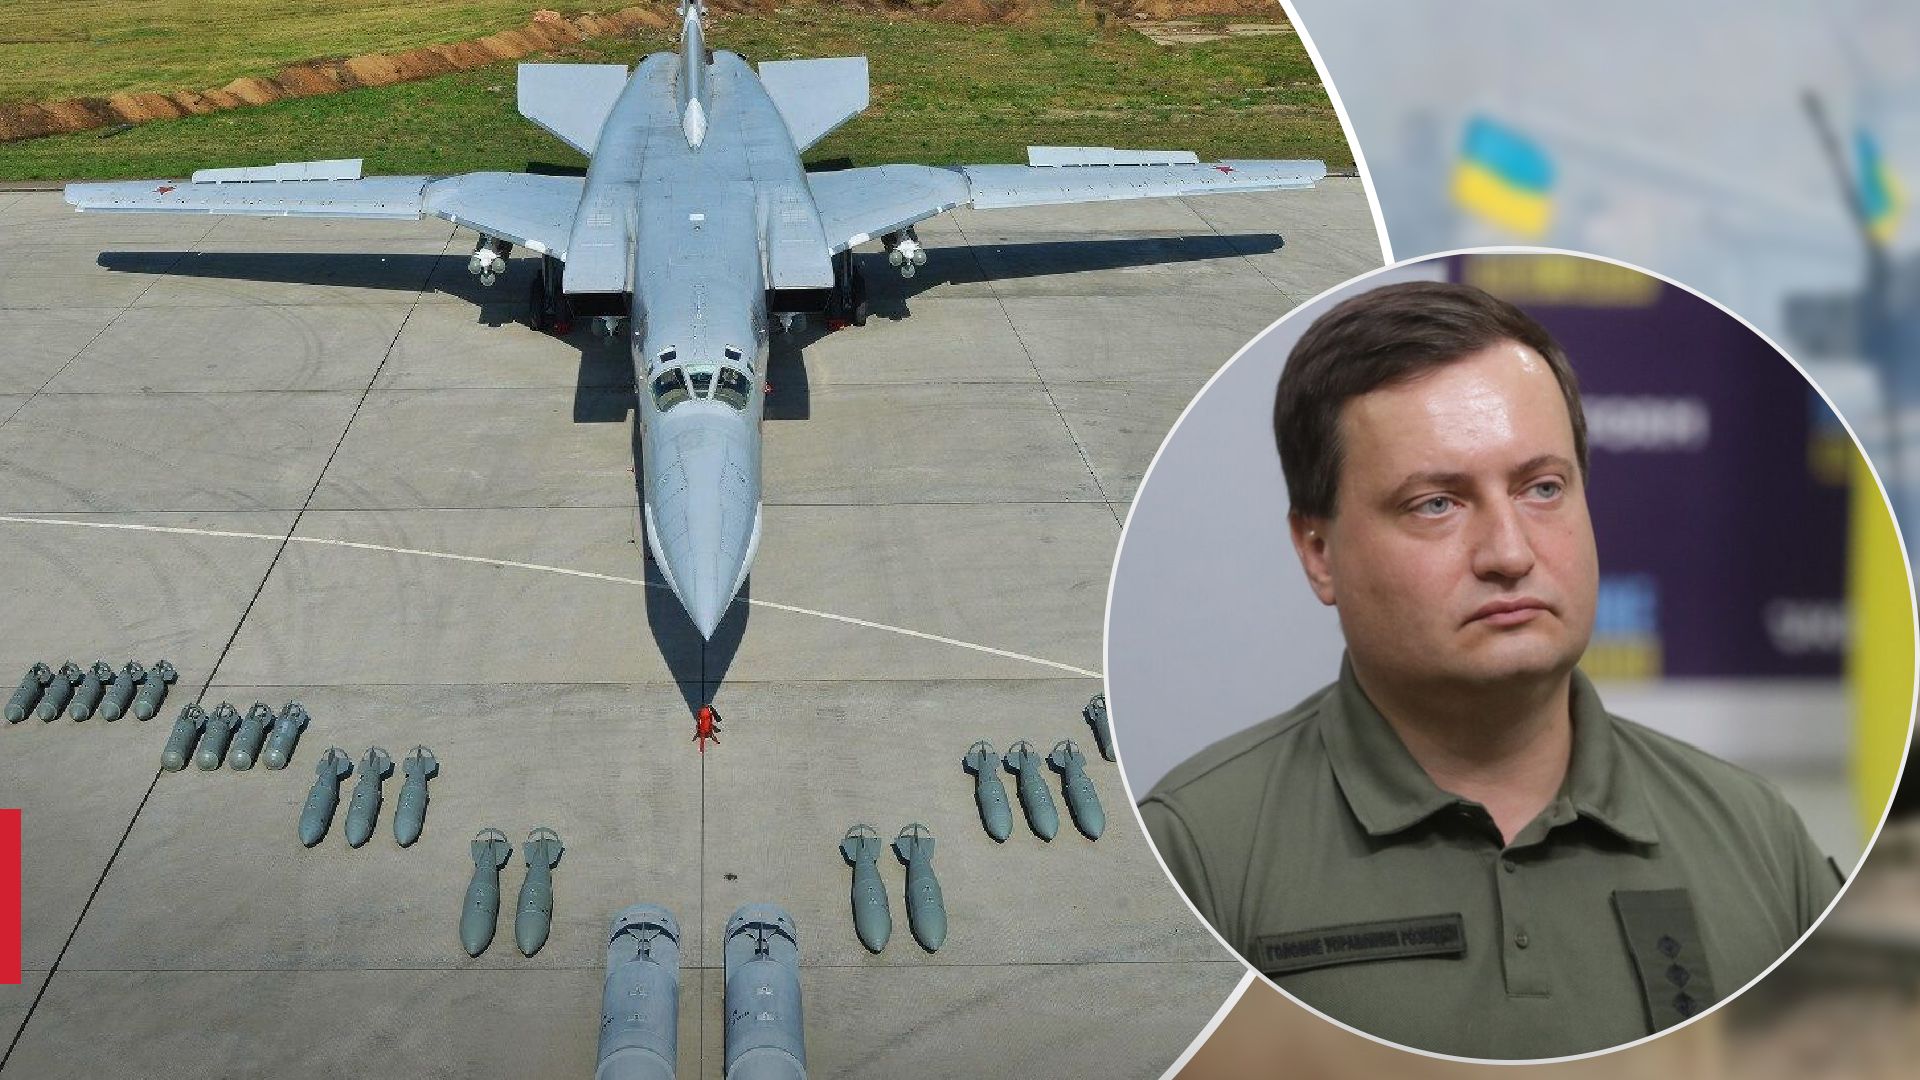 Юсов объяснил последствия уничтожения ТУ-22 для России